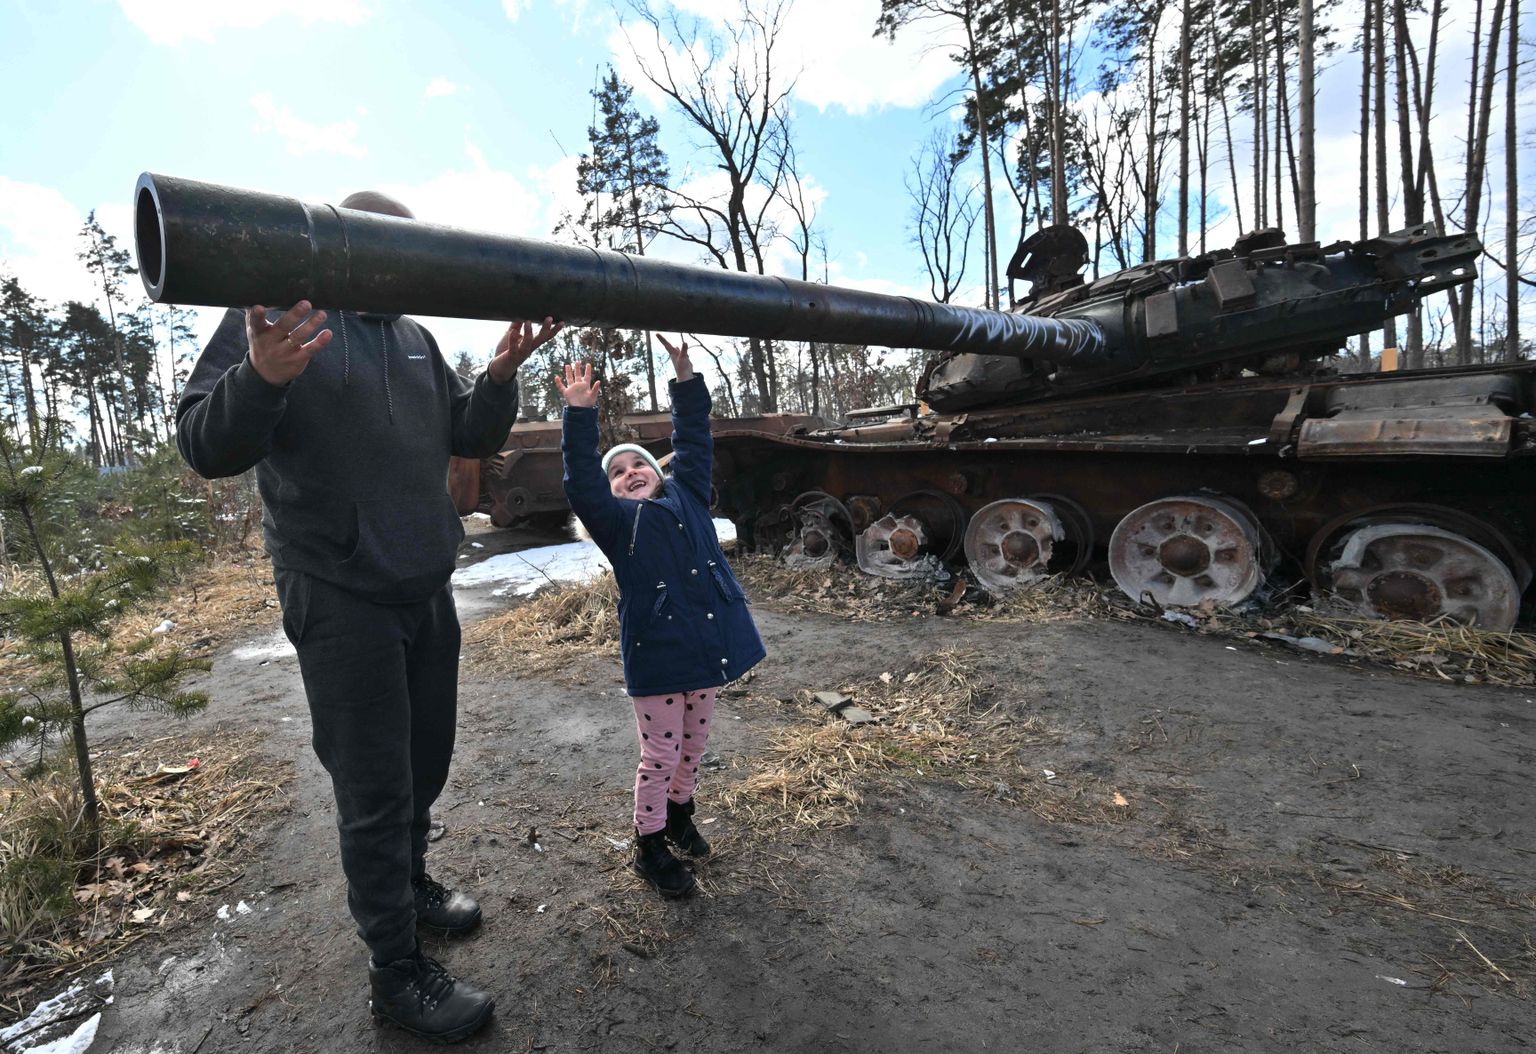 Vene purustatud tank Dmõtrivka külas.